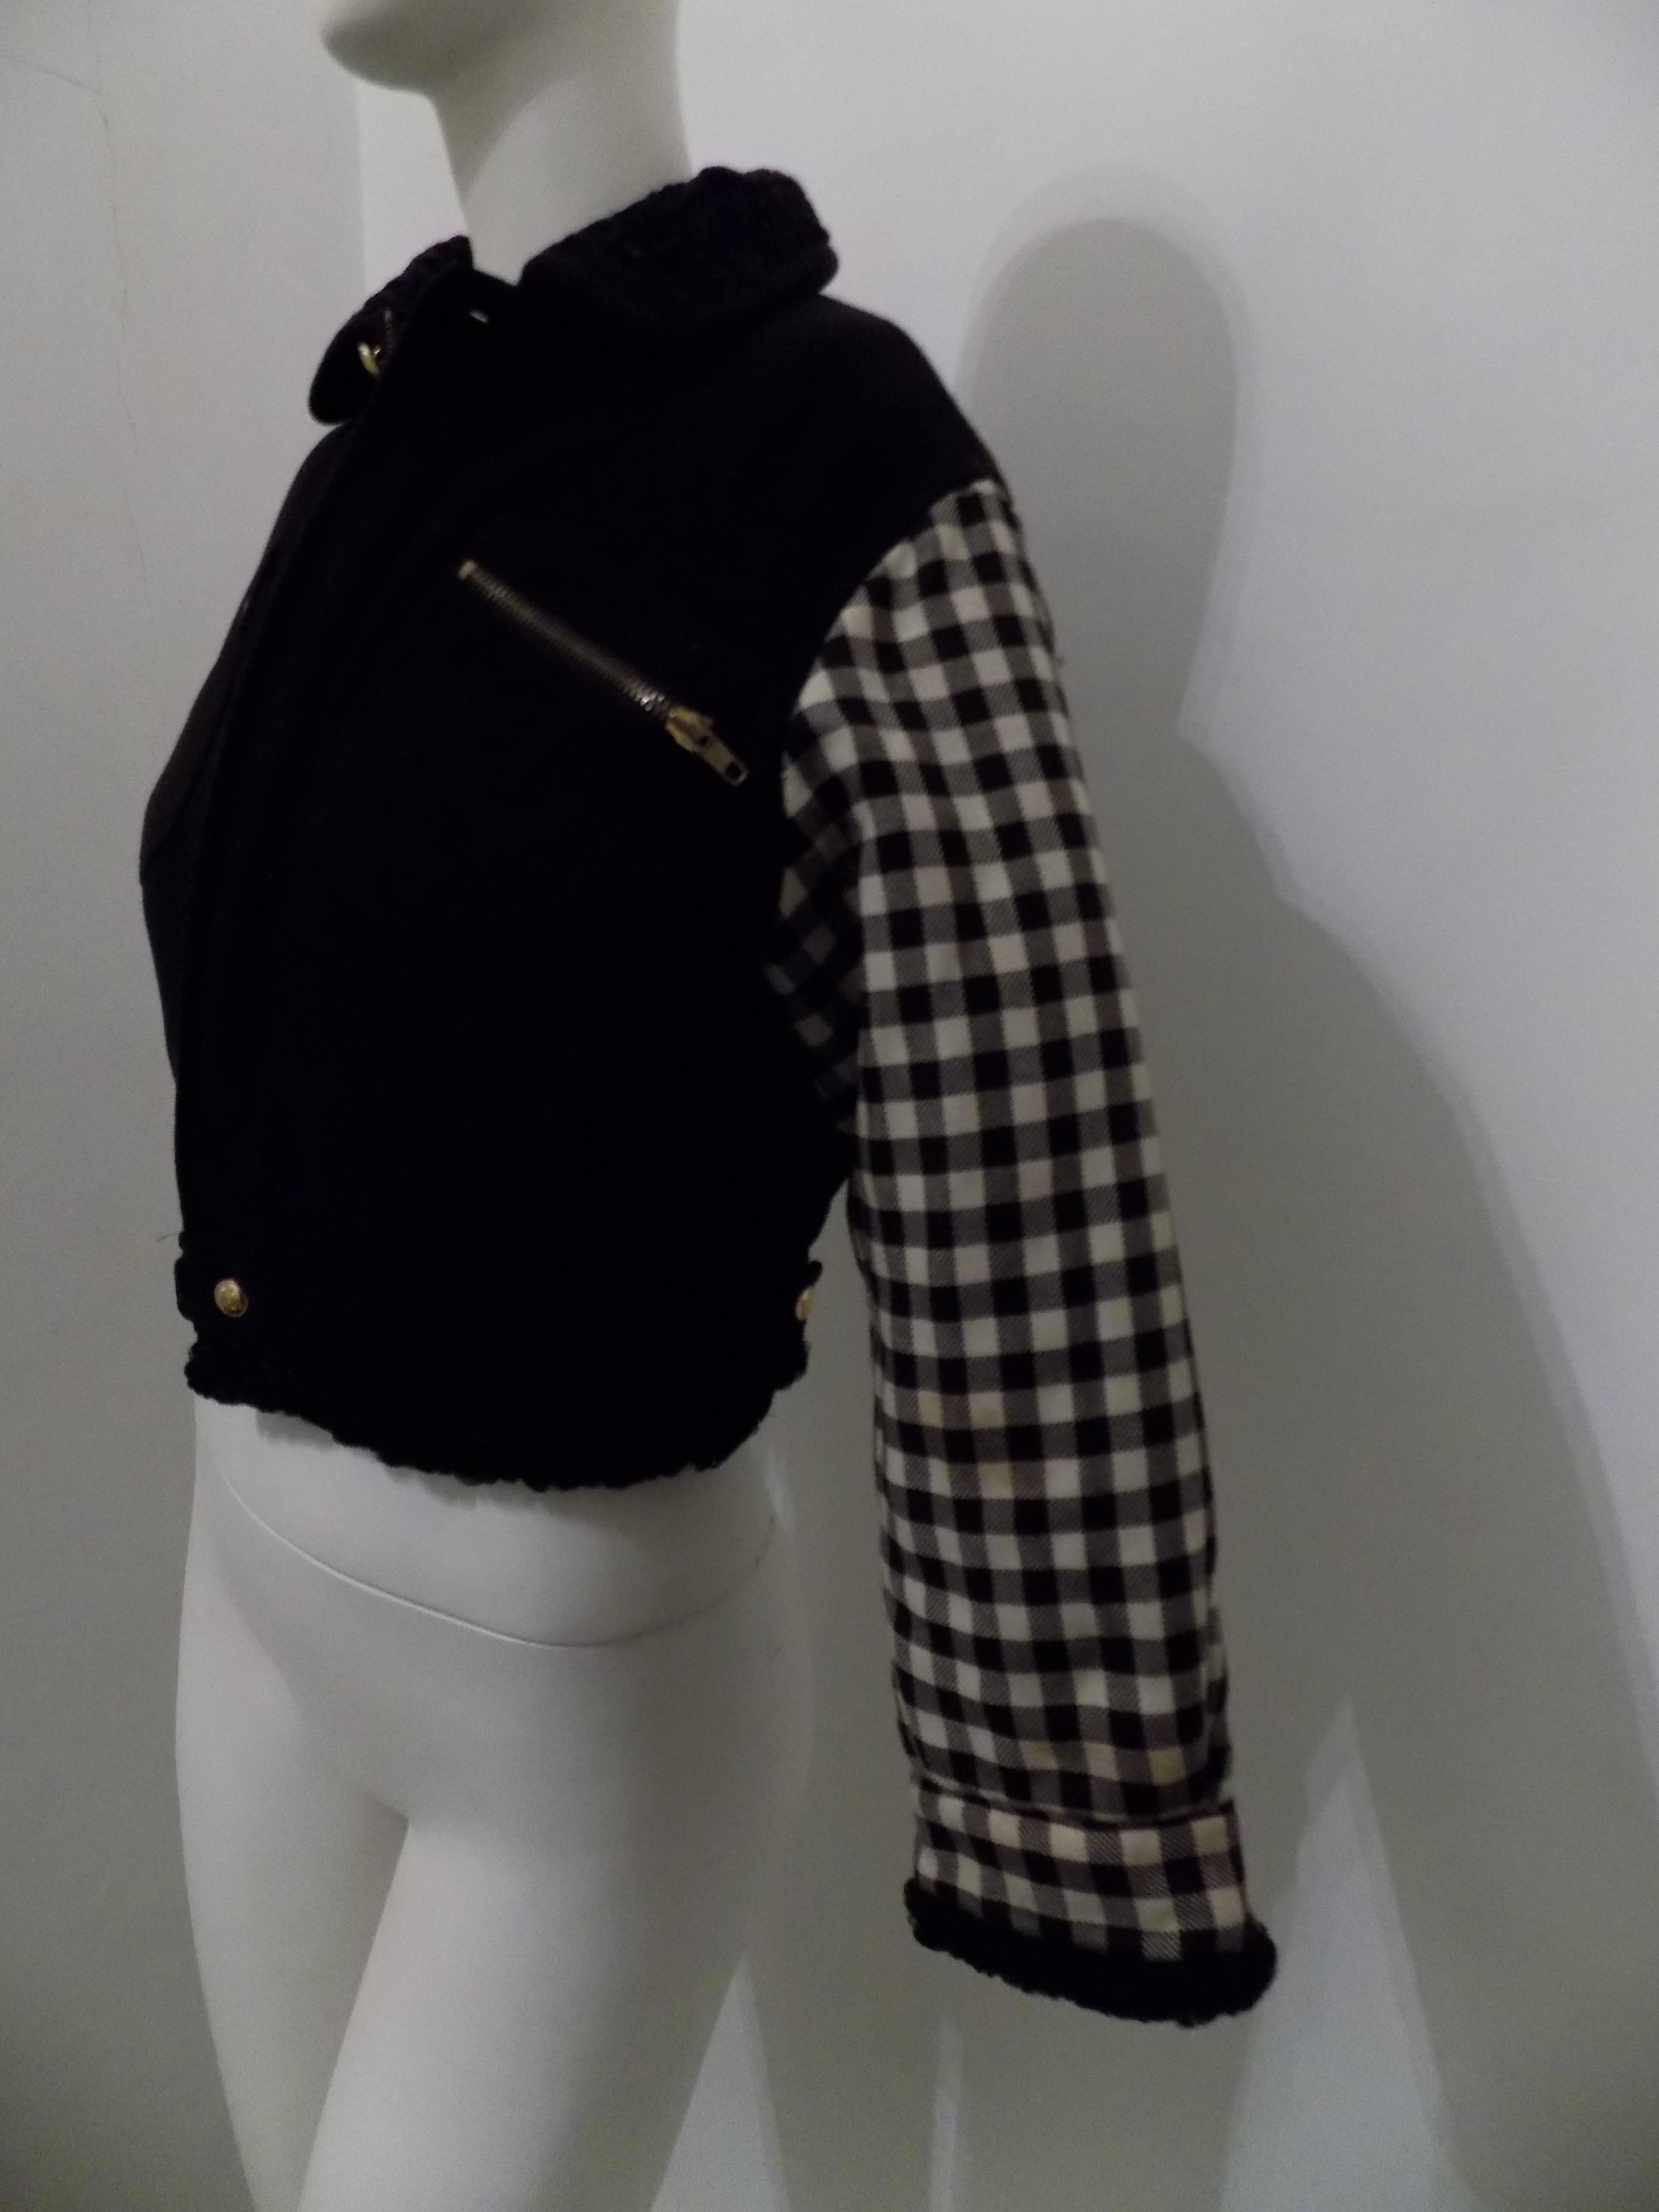 Gianni Versace pied de poule black jacket For Sale 1